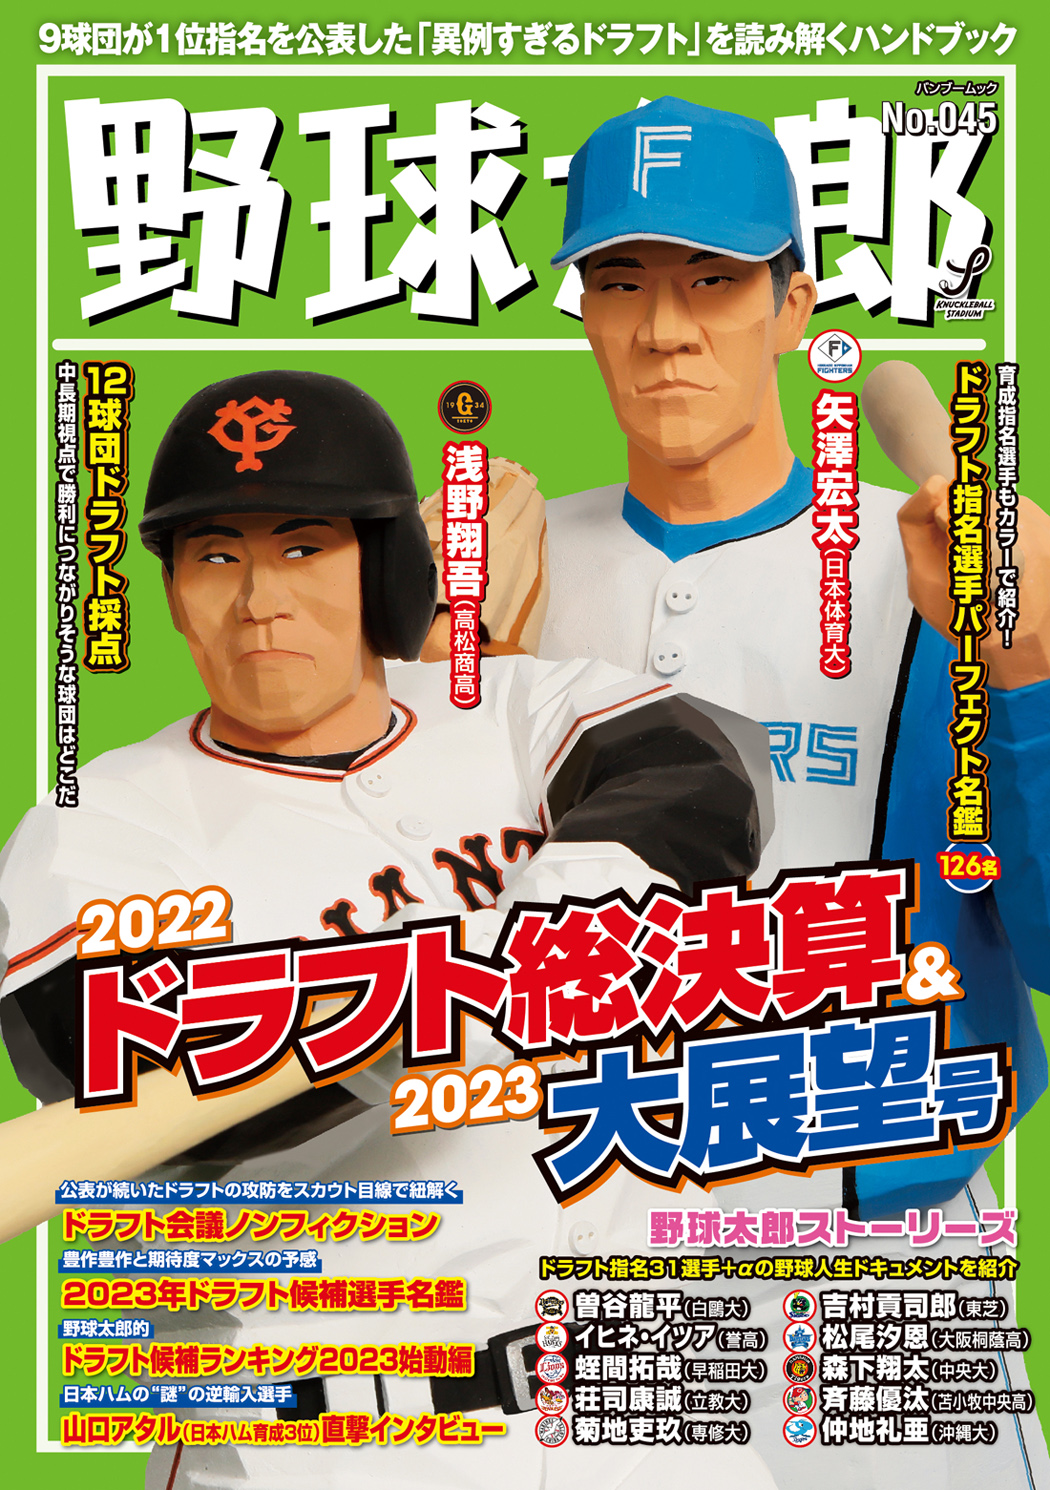 謎のドラフト指名選手もとてもわかる『野球太郎No.045 2022ドラフト総決算&2023大展望号』は11月26日発売！